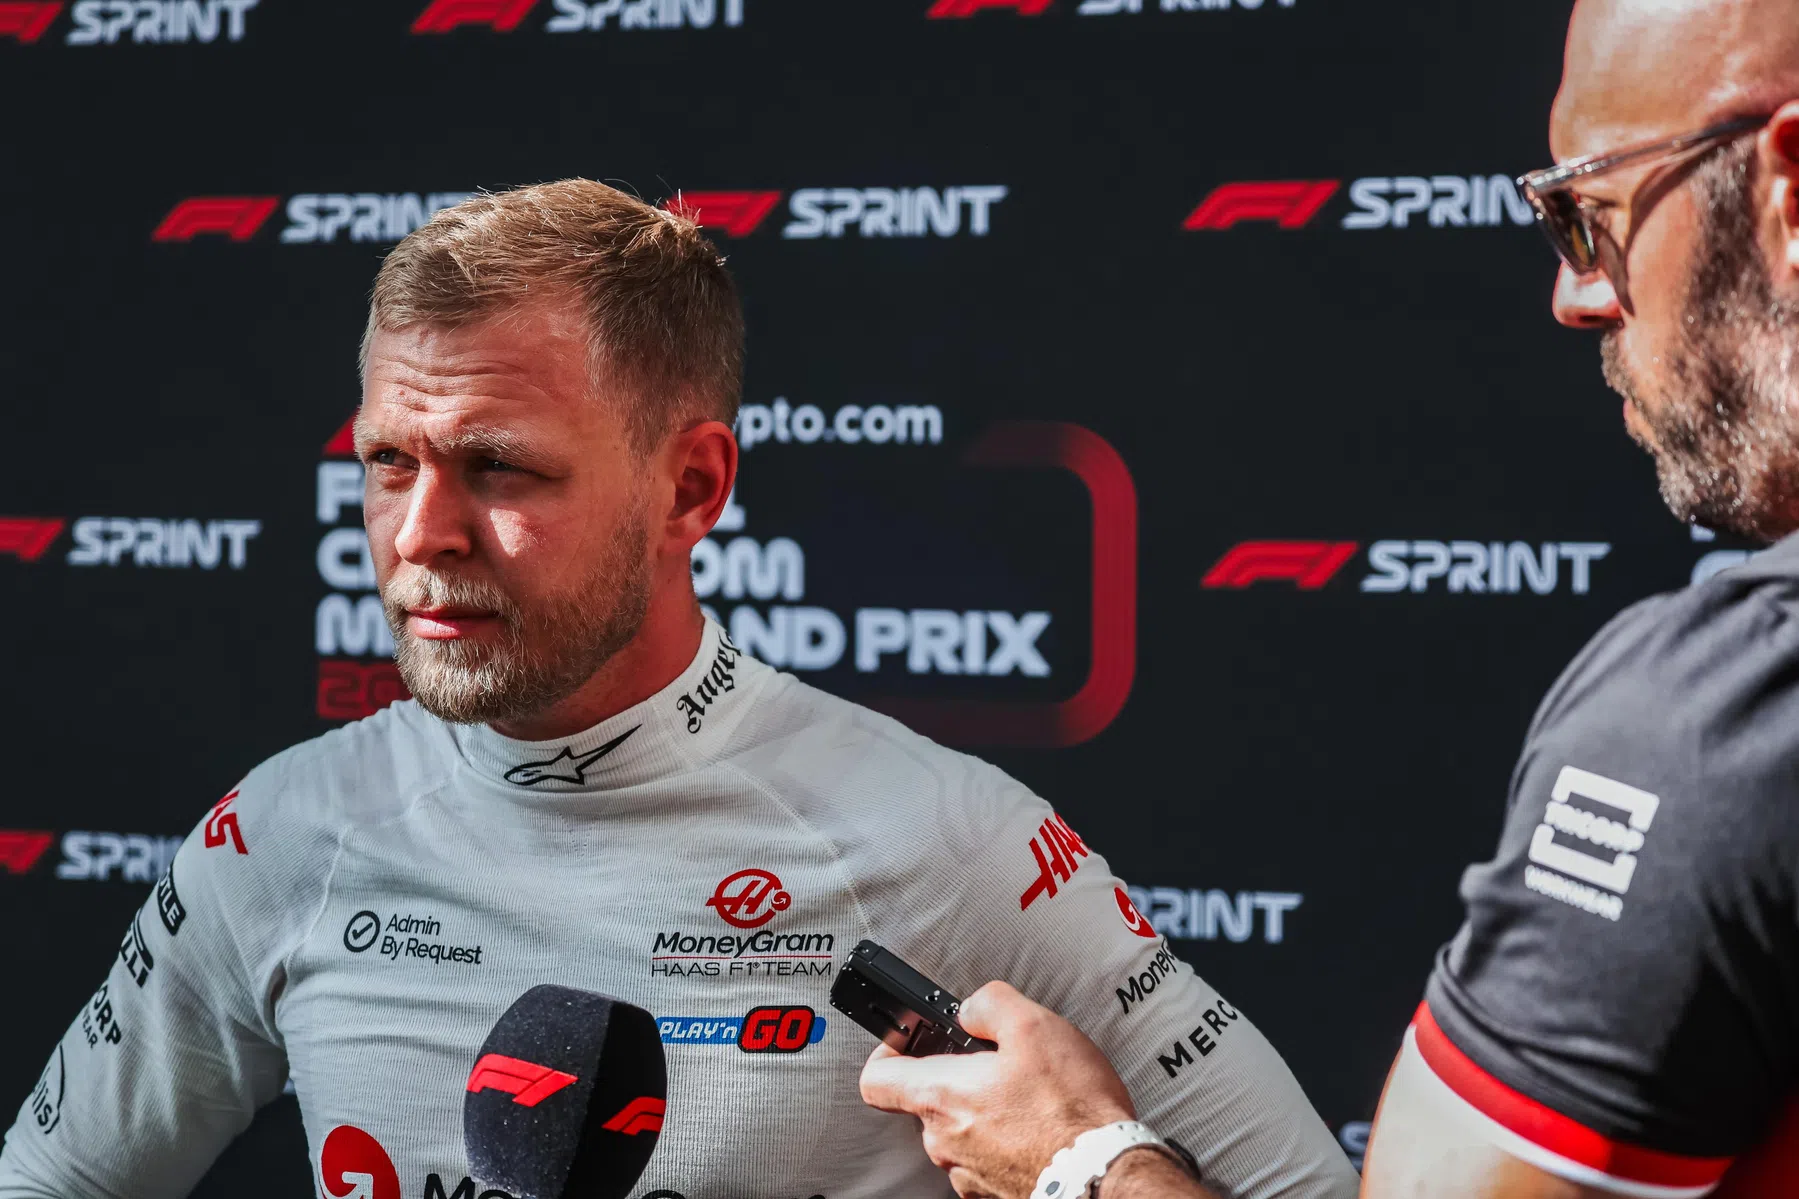 Réaction de Magnussen après les pénalités lors de la course de vitesse à Miami